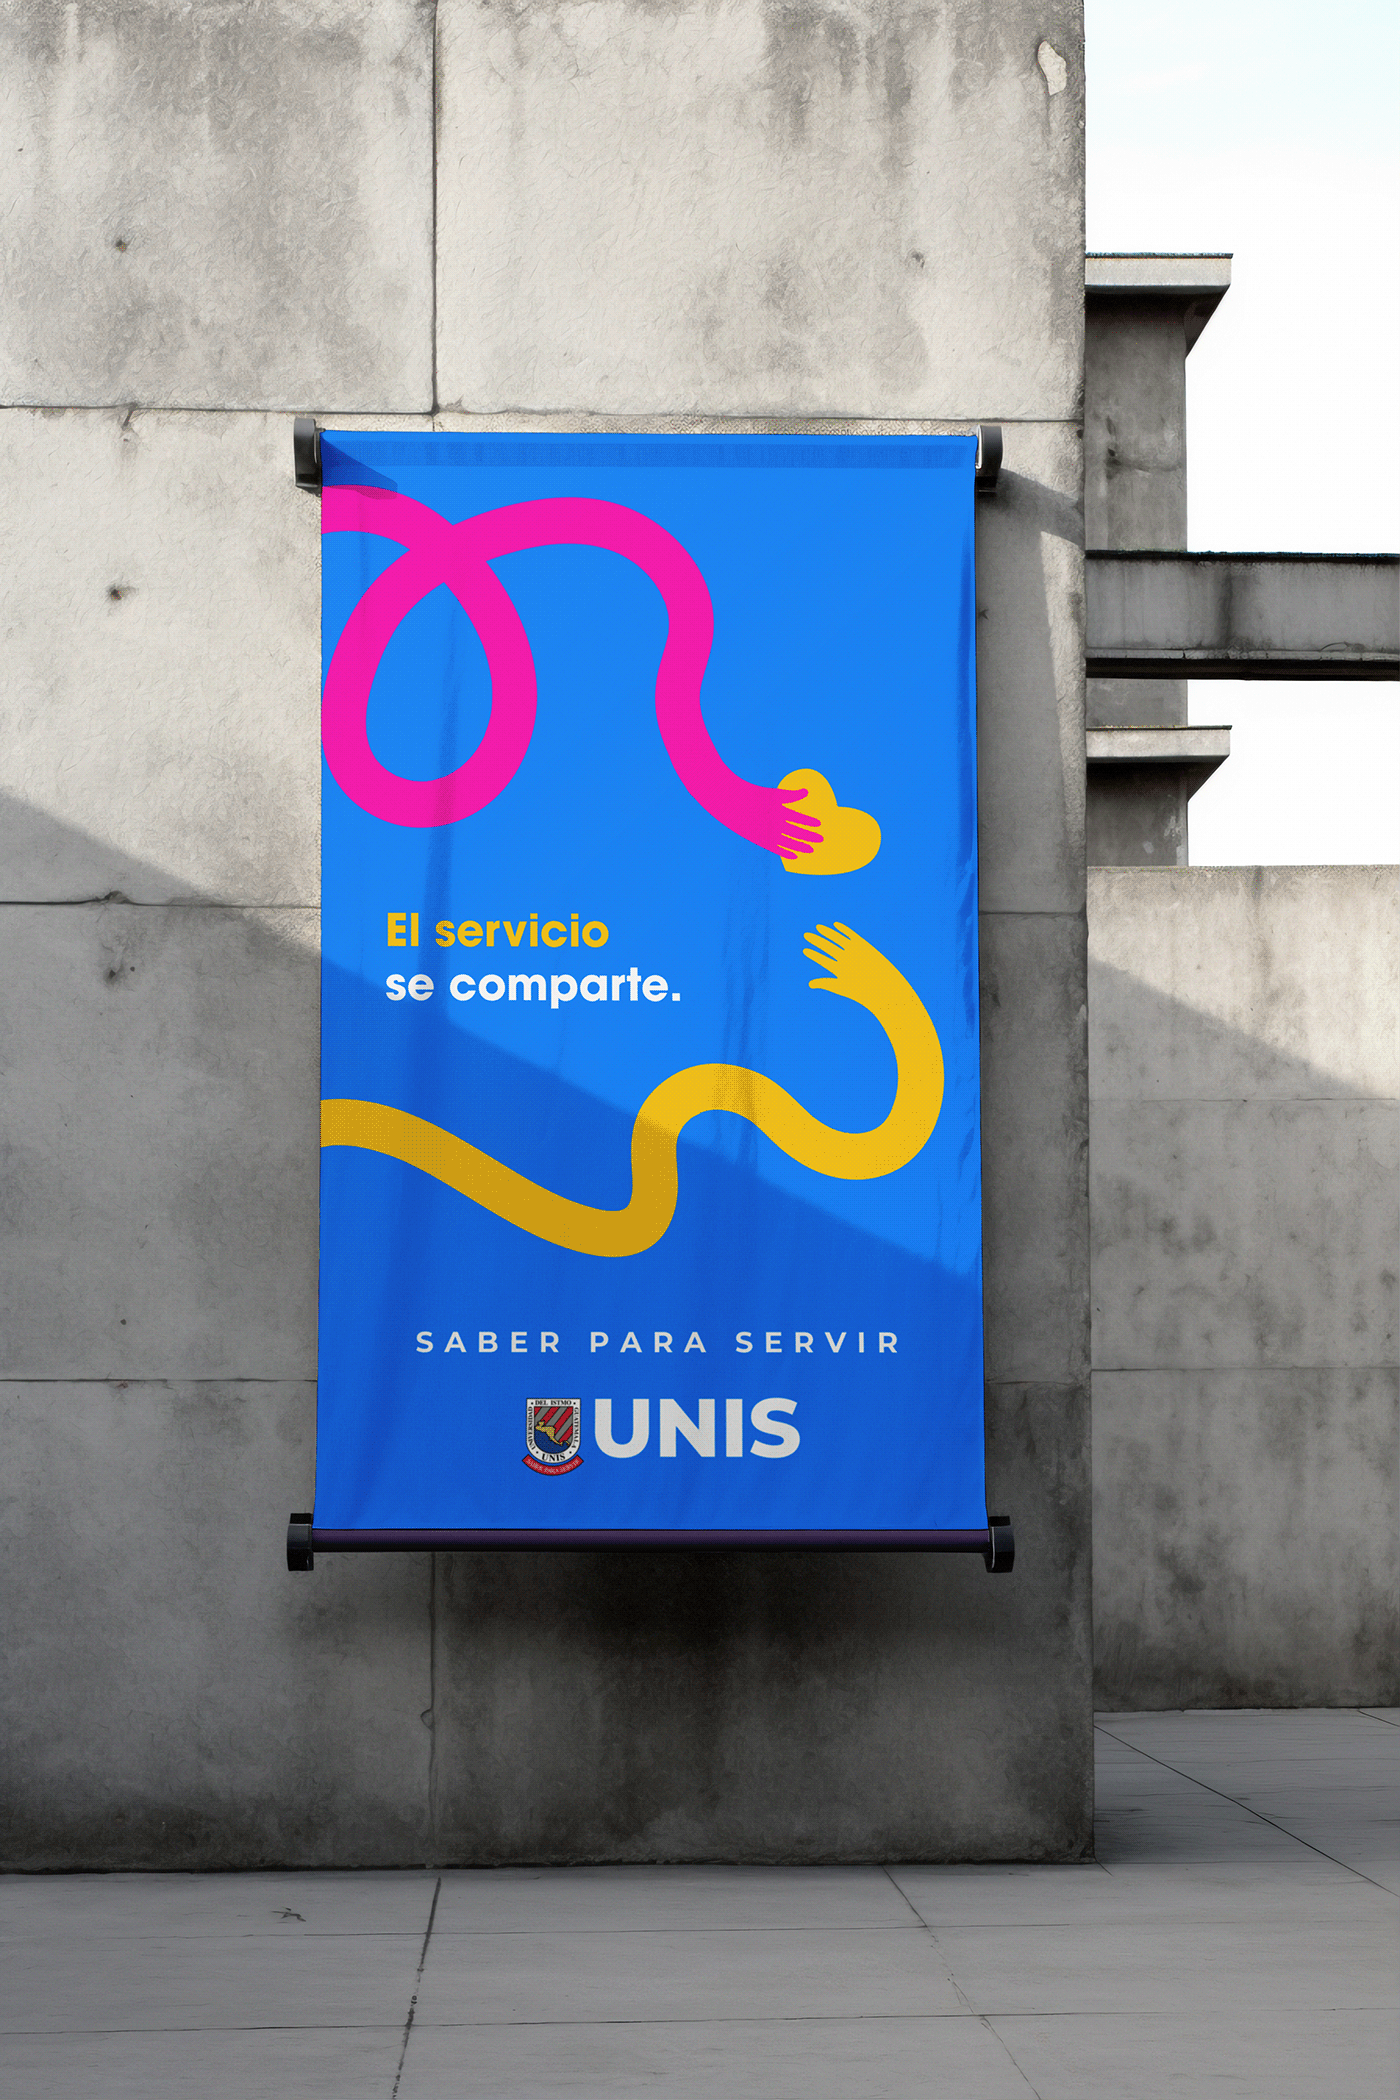 Advertising  University educación universidad publicidad diseño gráfico campaña publicitaria university project diseño creatividad publicitaria